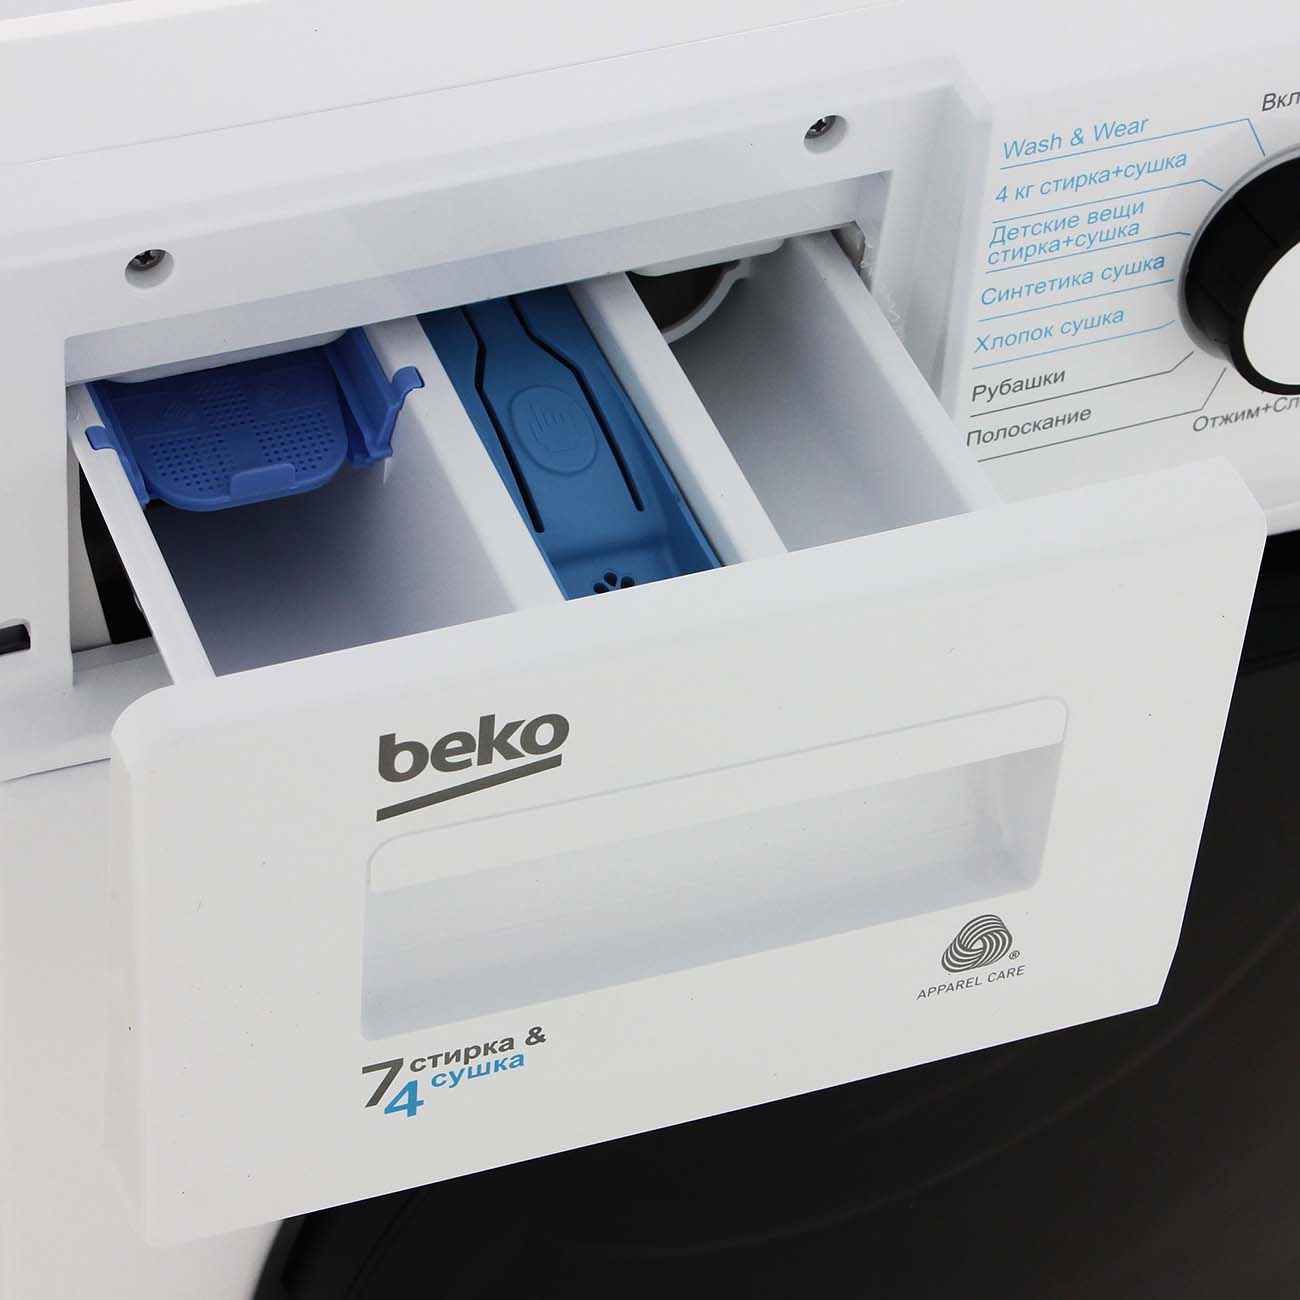 Beko wdb 7425. Beko wdb7425r2w. Стиральная Beko. Стиральная машина с функцией сушки. Отзывы о стиральной машине Beko 7425.